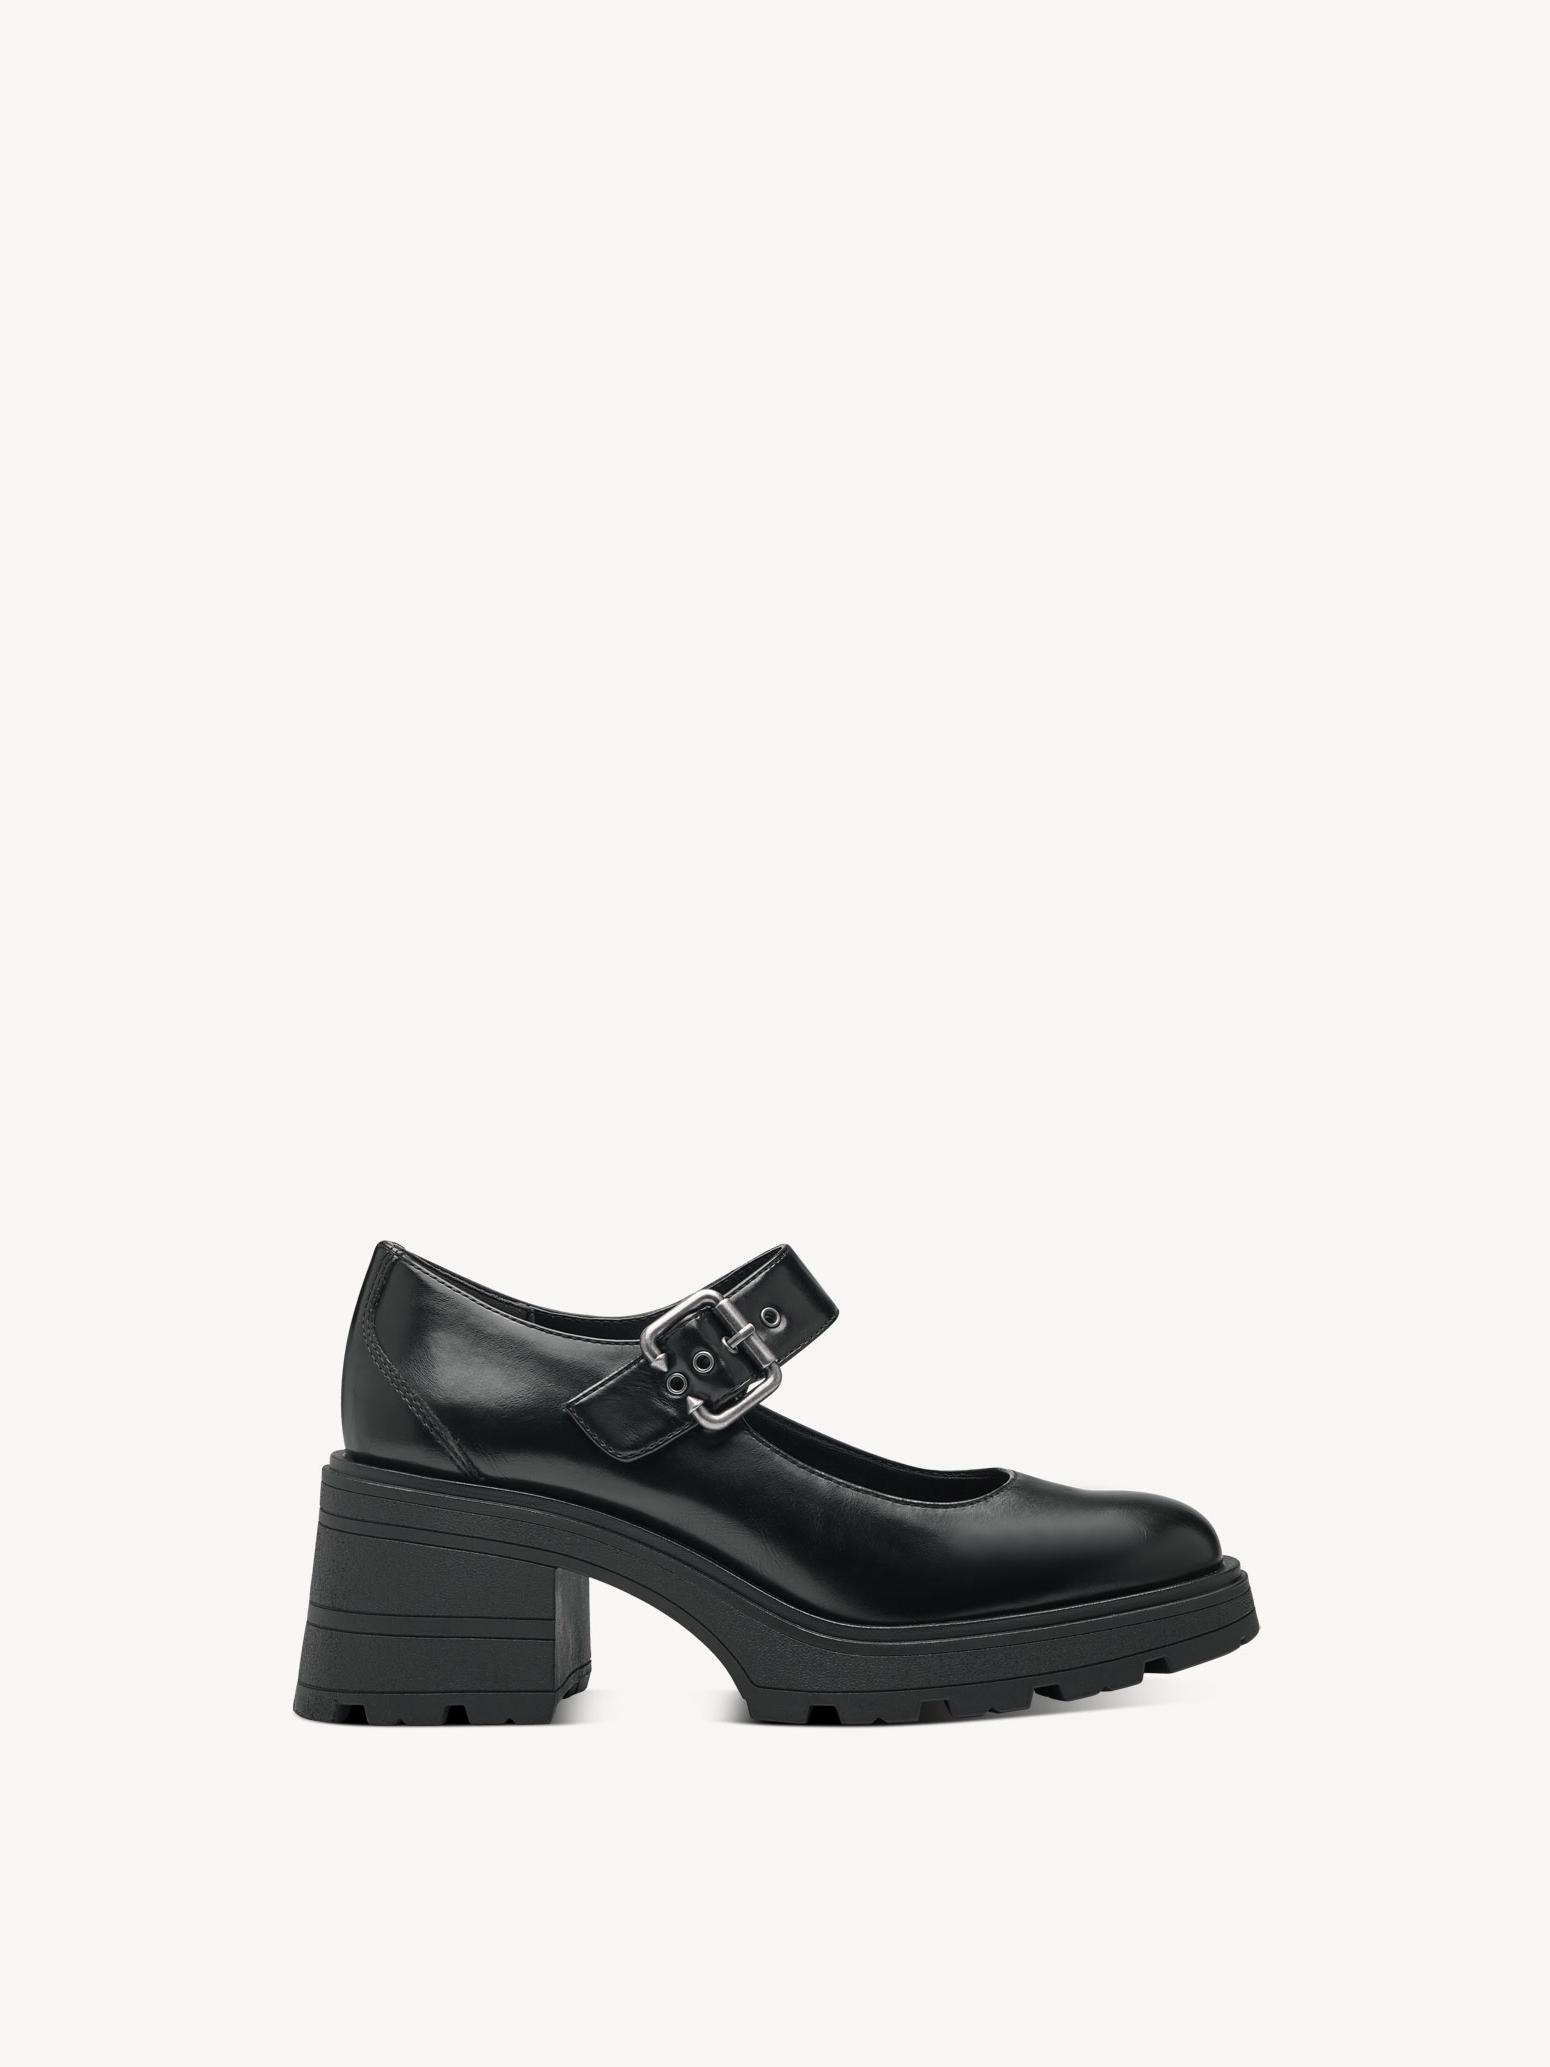 Туфли женские Tamaris 1-24430-41-001 черные 36 RU